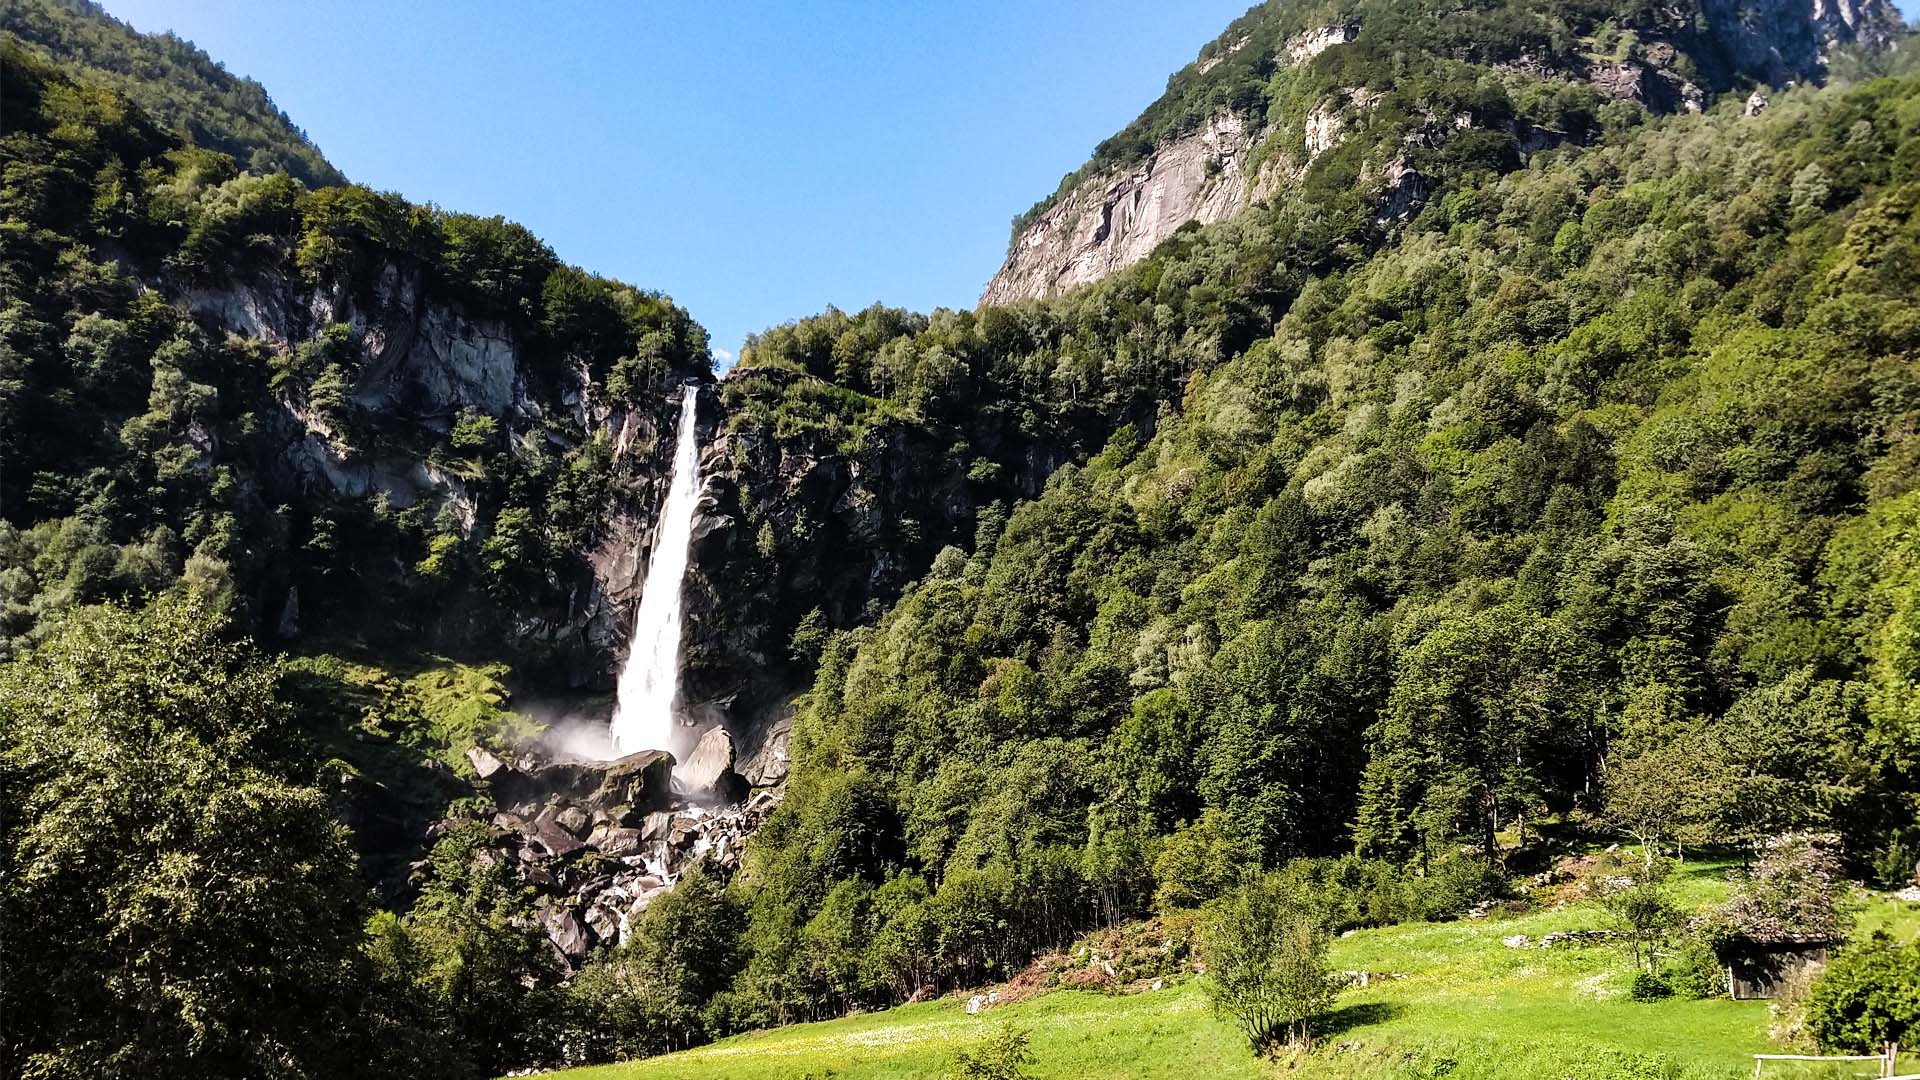 Svizzera - Val Bavona, itinerarium